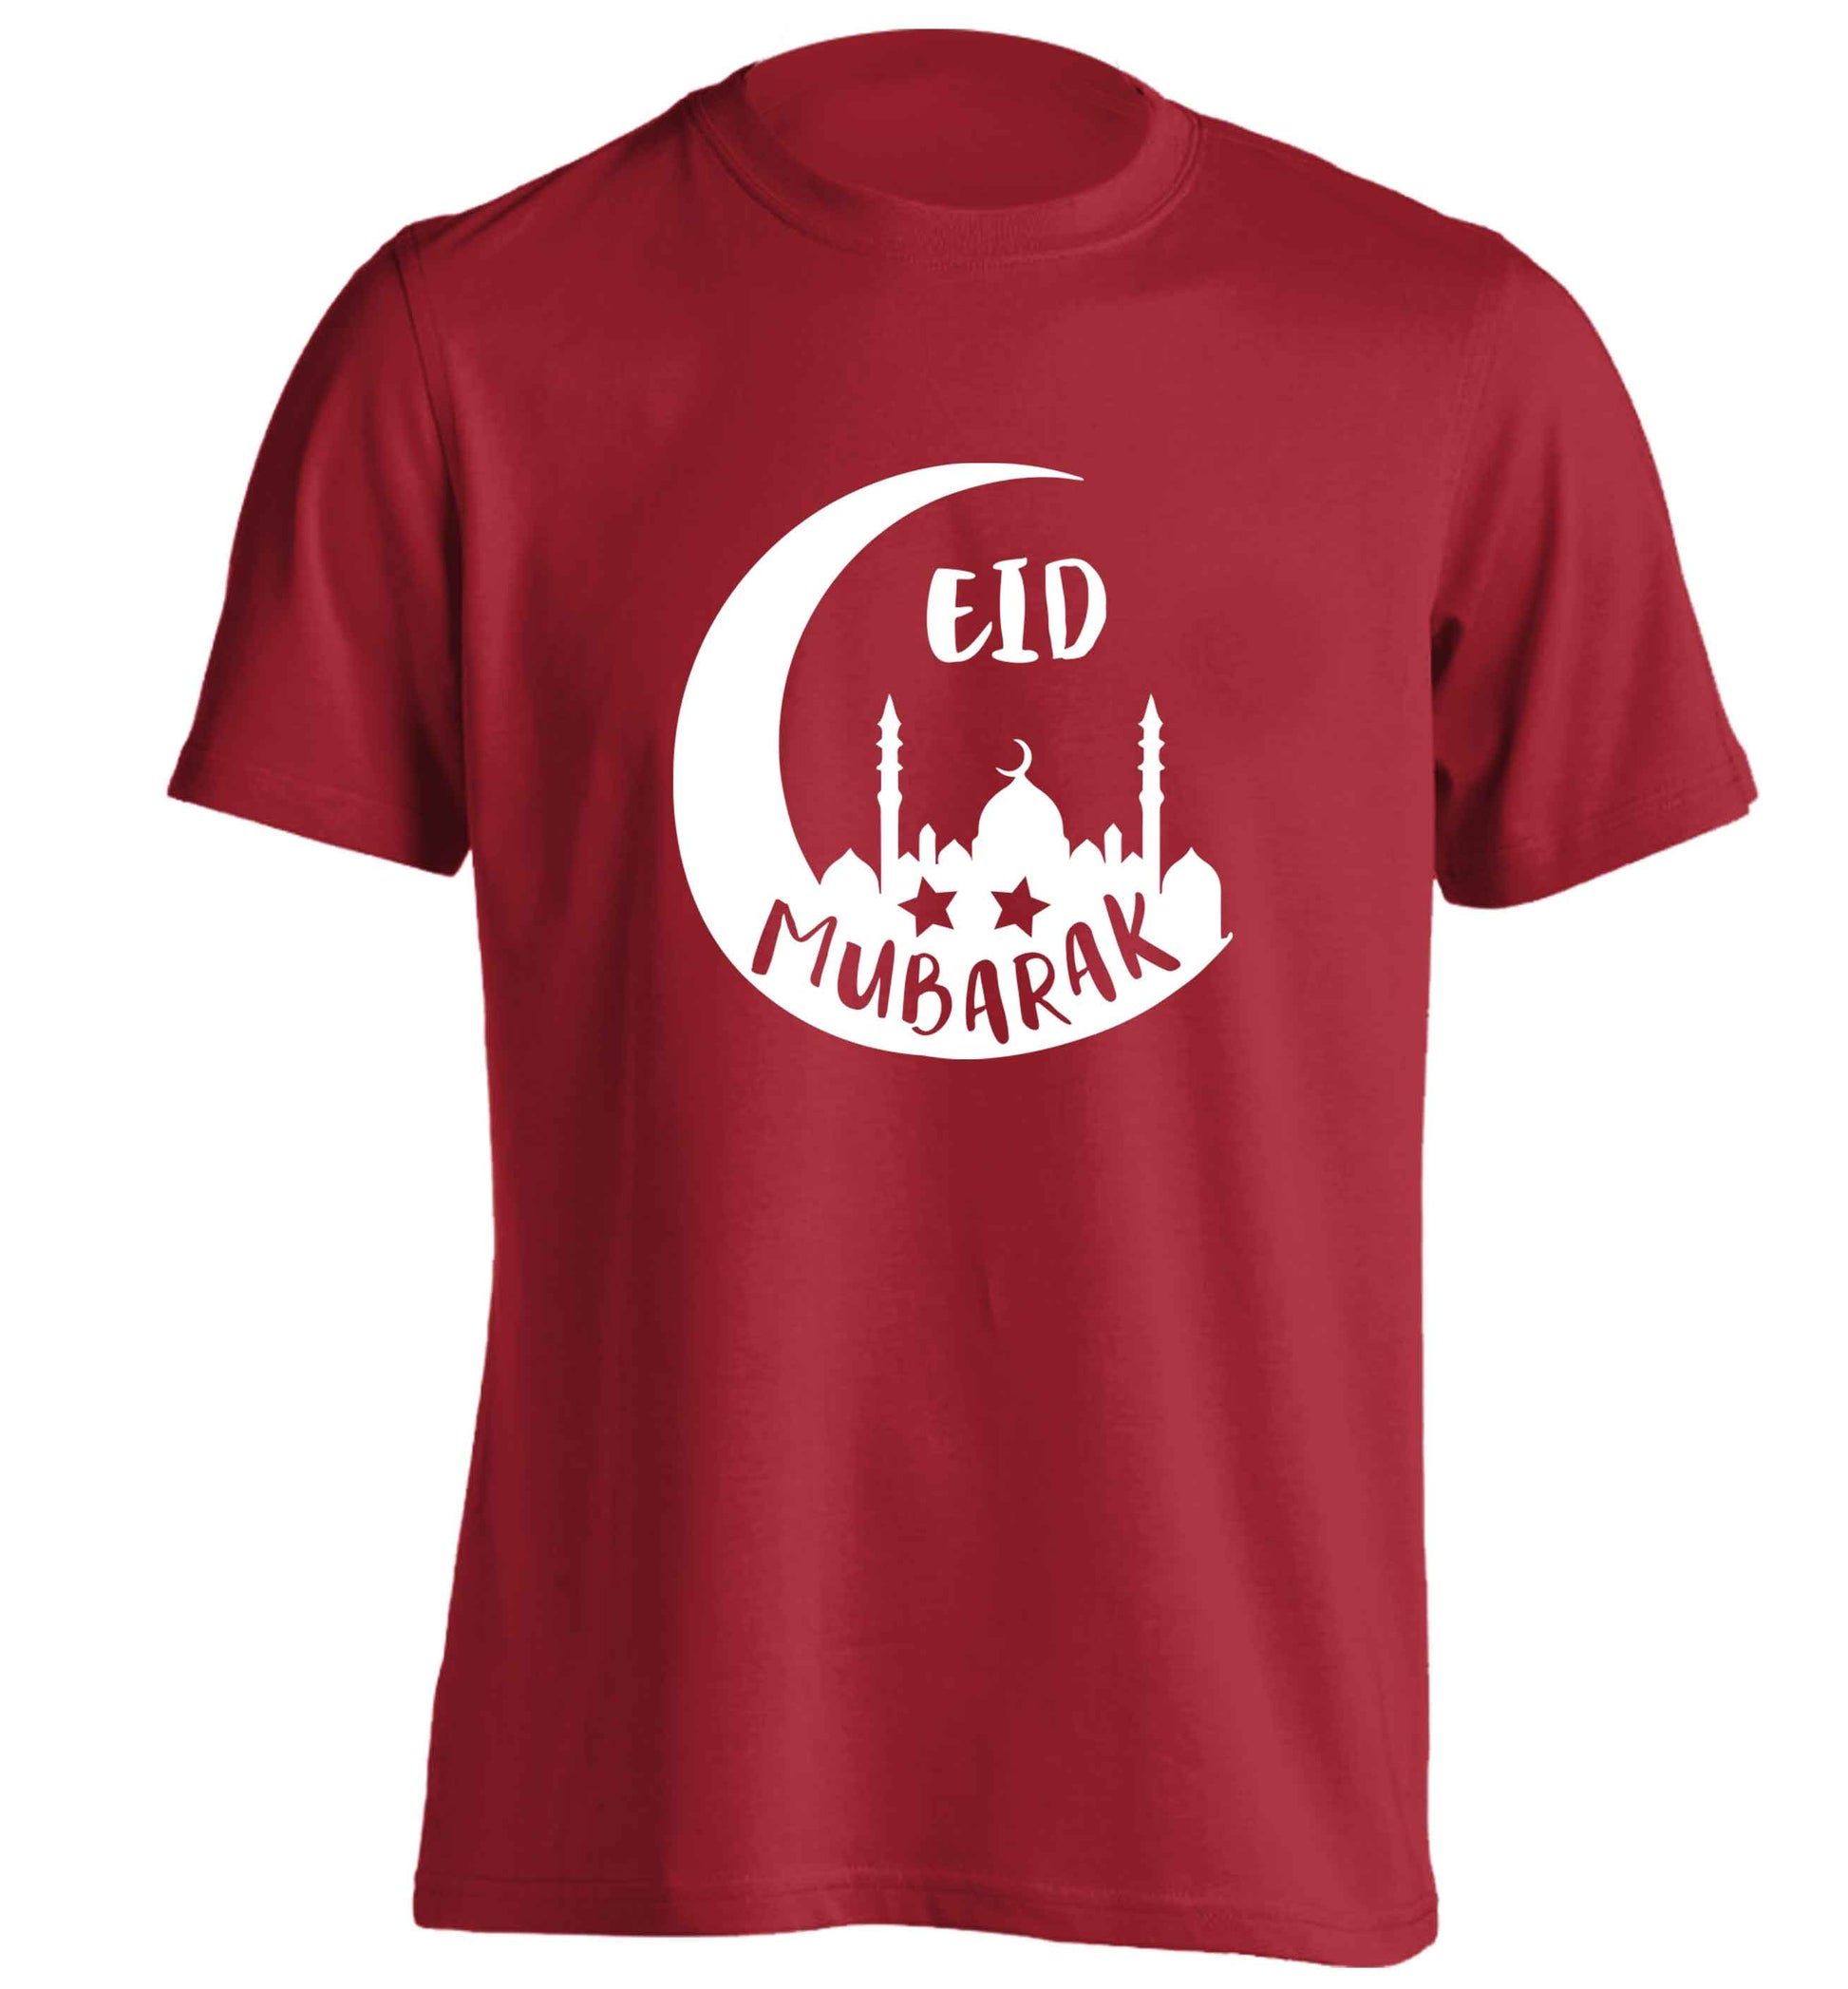 Eid mubarak adults unisex red Tshirt 2XL